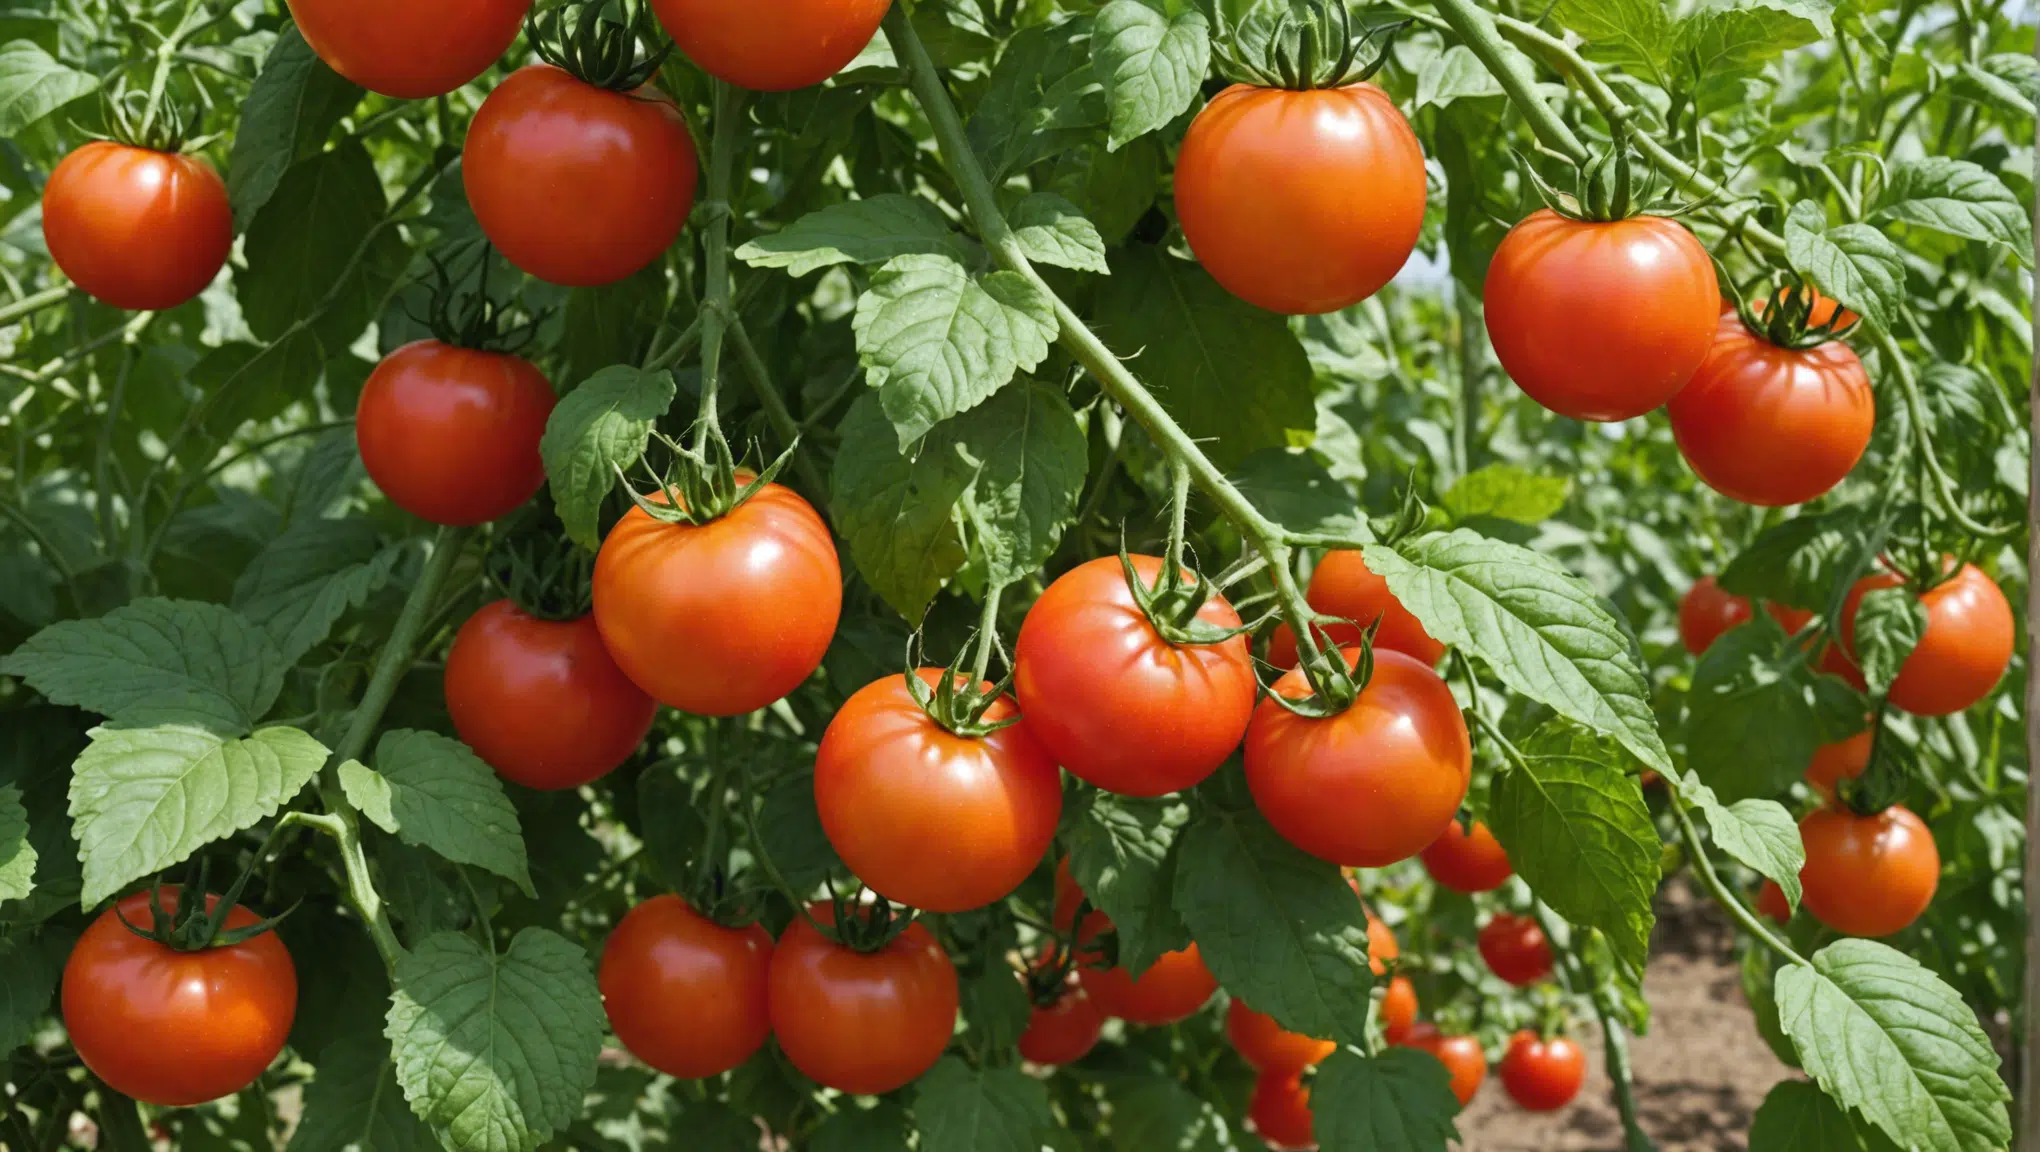 découvrez comment faire pousser des tomates énormes en utilisant des astuces horticoles efficaces pour des récoltes impressionnantes.